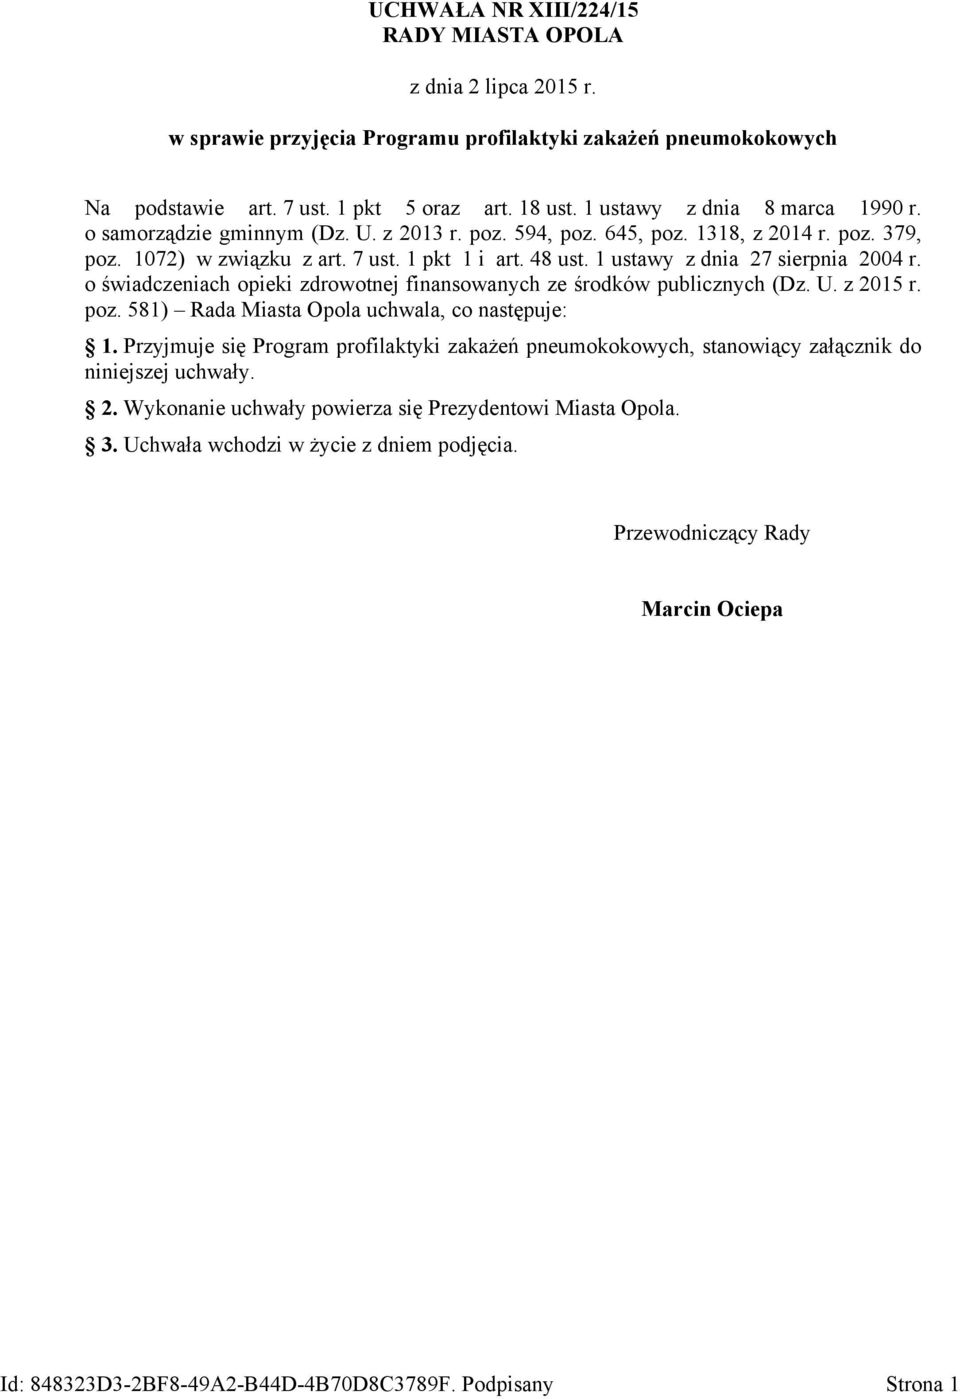 1 ustawy z dnia 27 sierpnia 2004 r. o świadczeniach opieki zdrowotnej finansowanych ze środków publicznych (Dz. U. z 2015 r. poz. 581) Rada Miasta Opola uchwala, co następuje: 1.